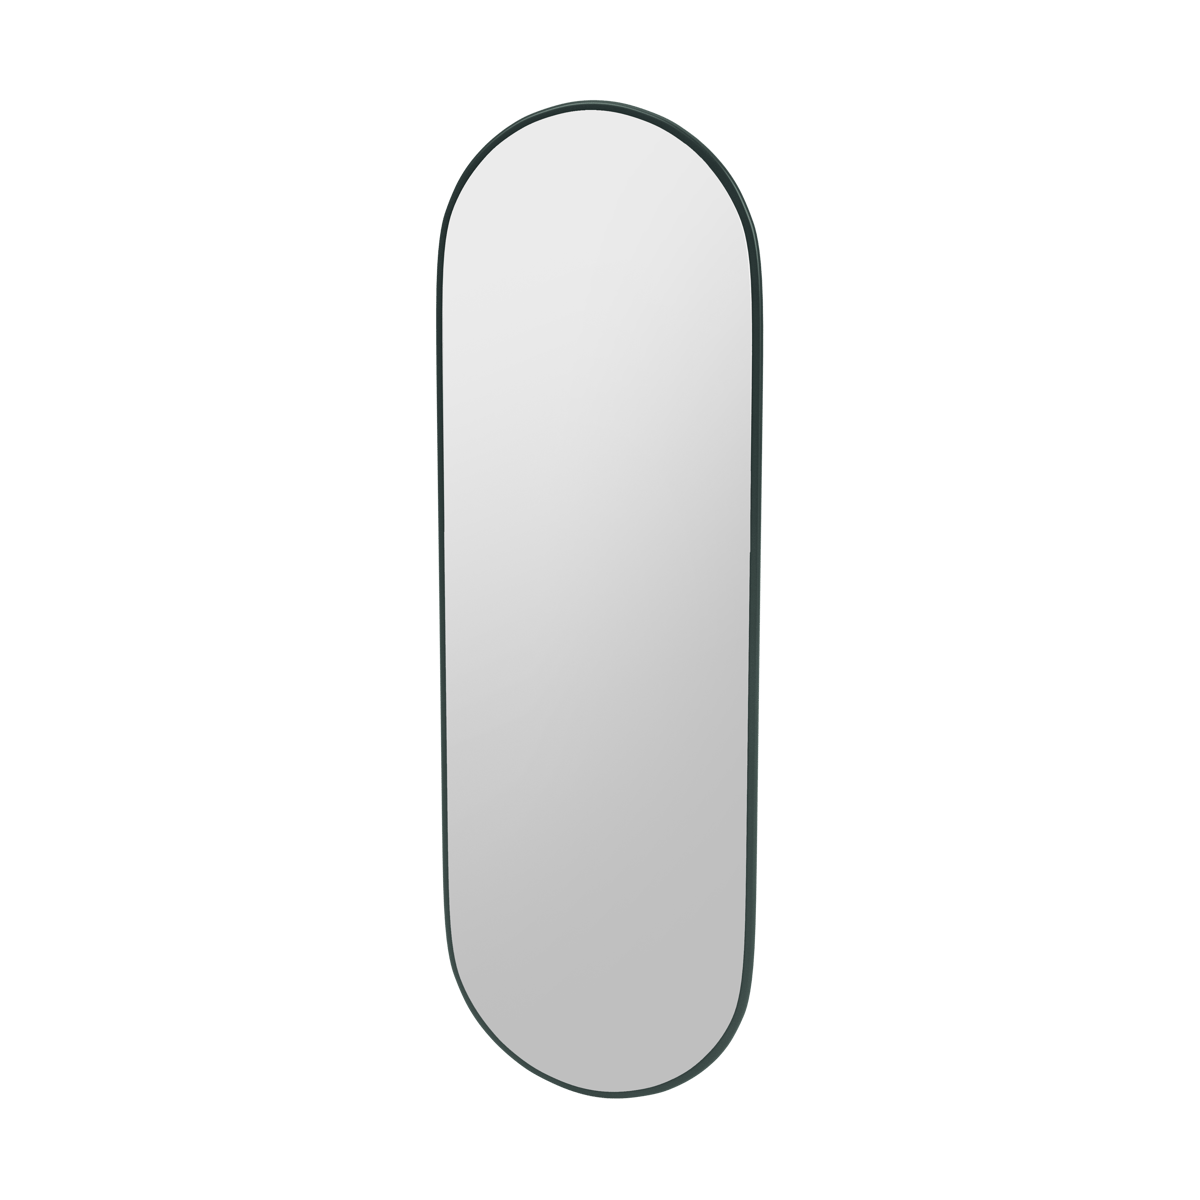 Montana FIGUUR Mirror Spiegel - SP824R Black